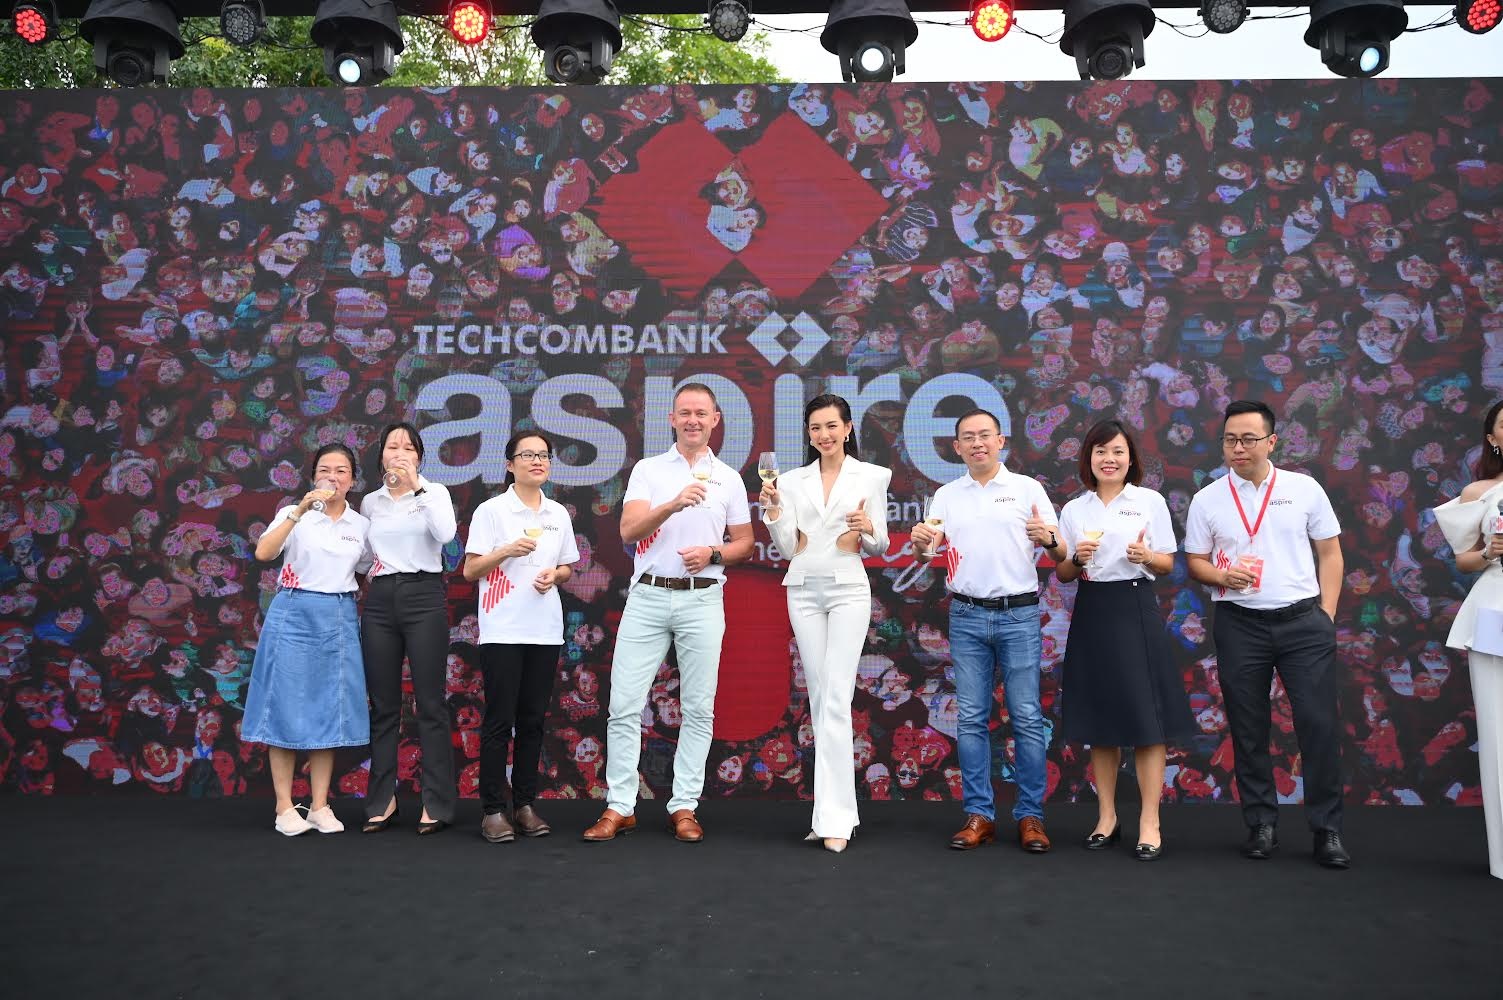 techcombank ra mat thuong hieu tai chinh danh rieng cho the he why not